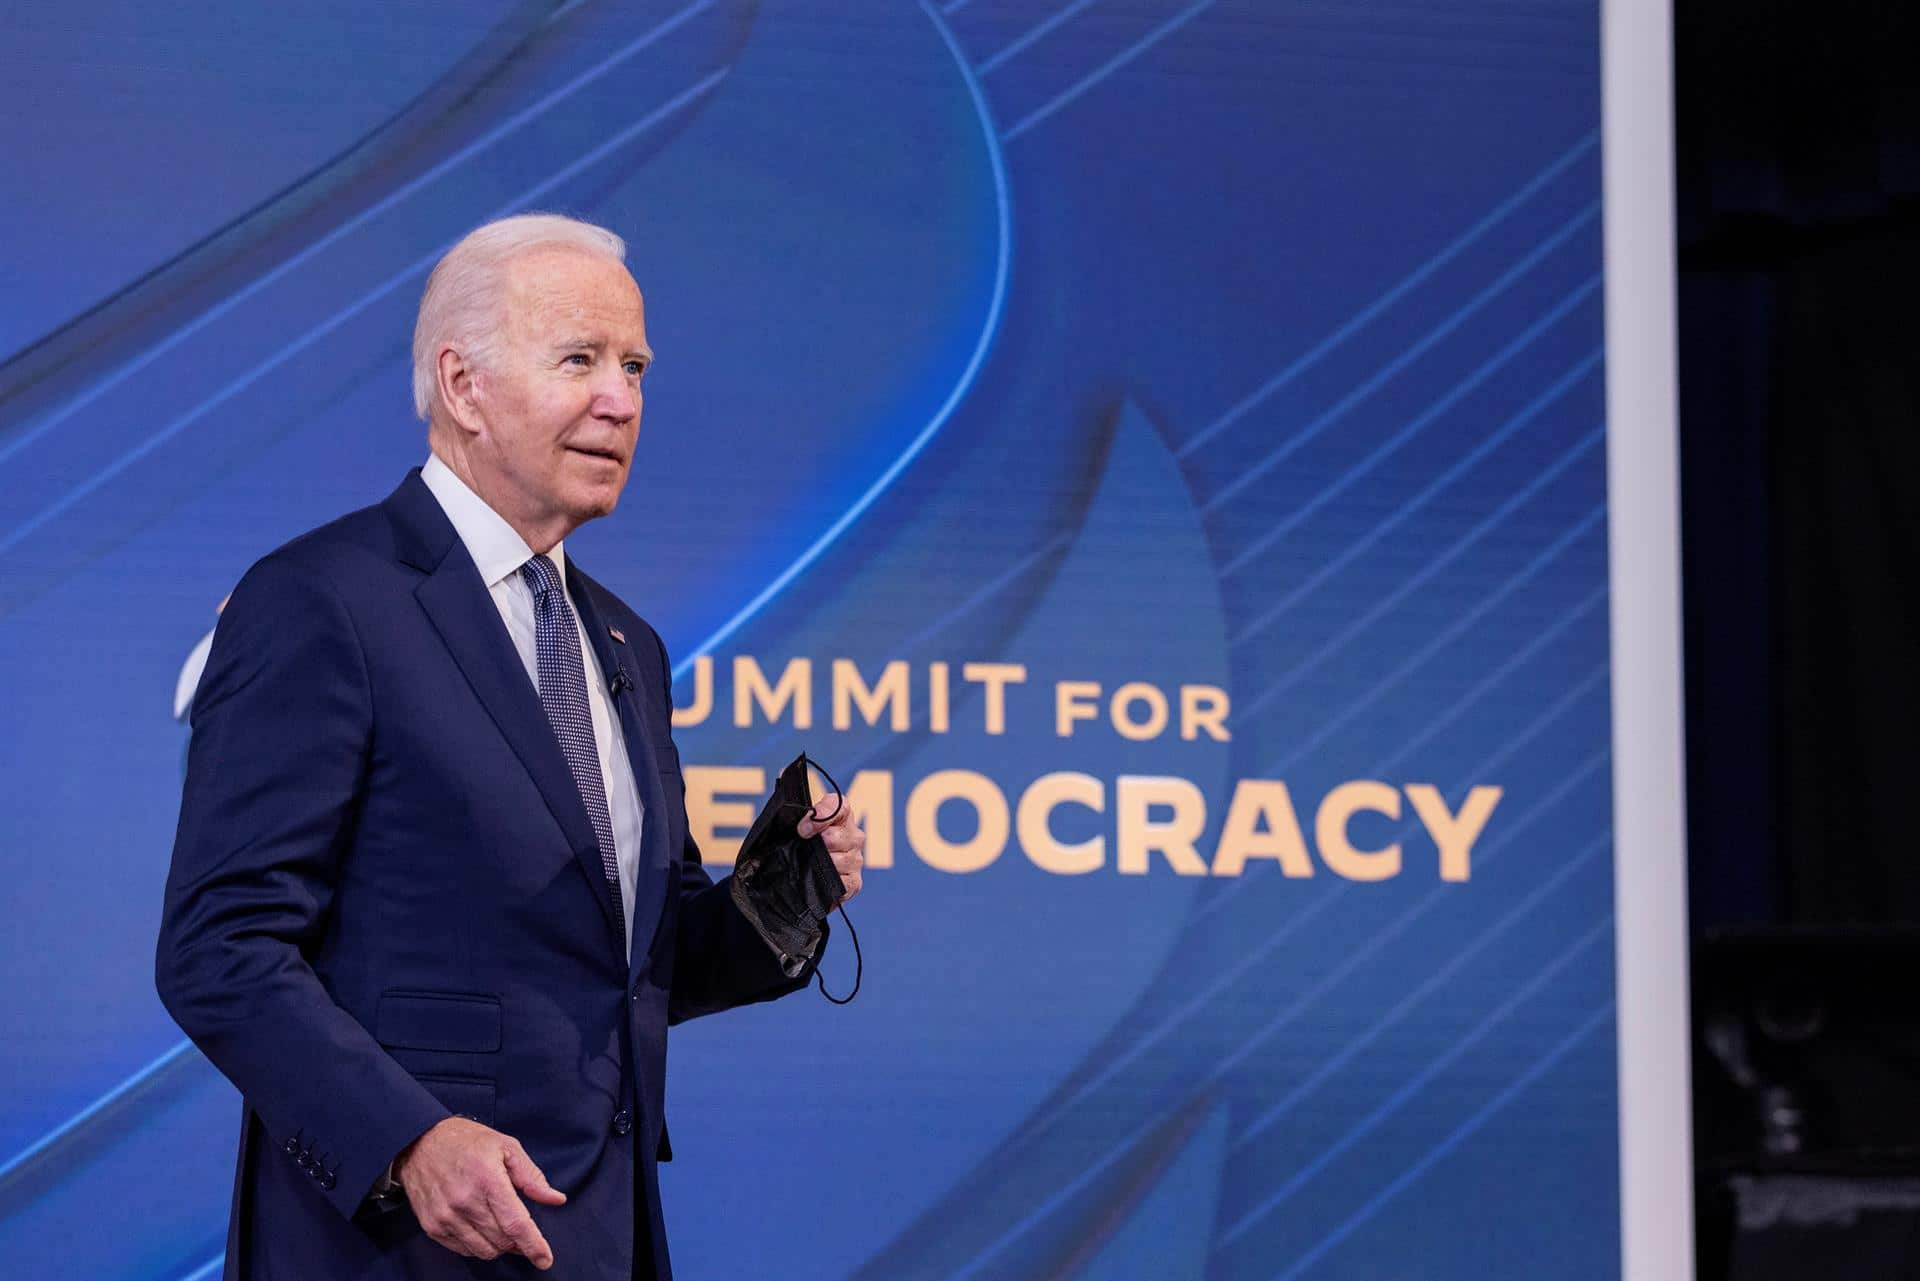 Biden advierte que democracia enfrenta desafíos ‘alarmantes’ en todo el mundo